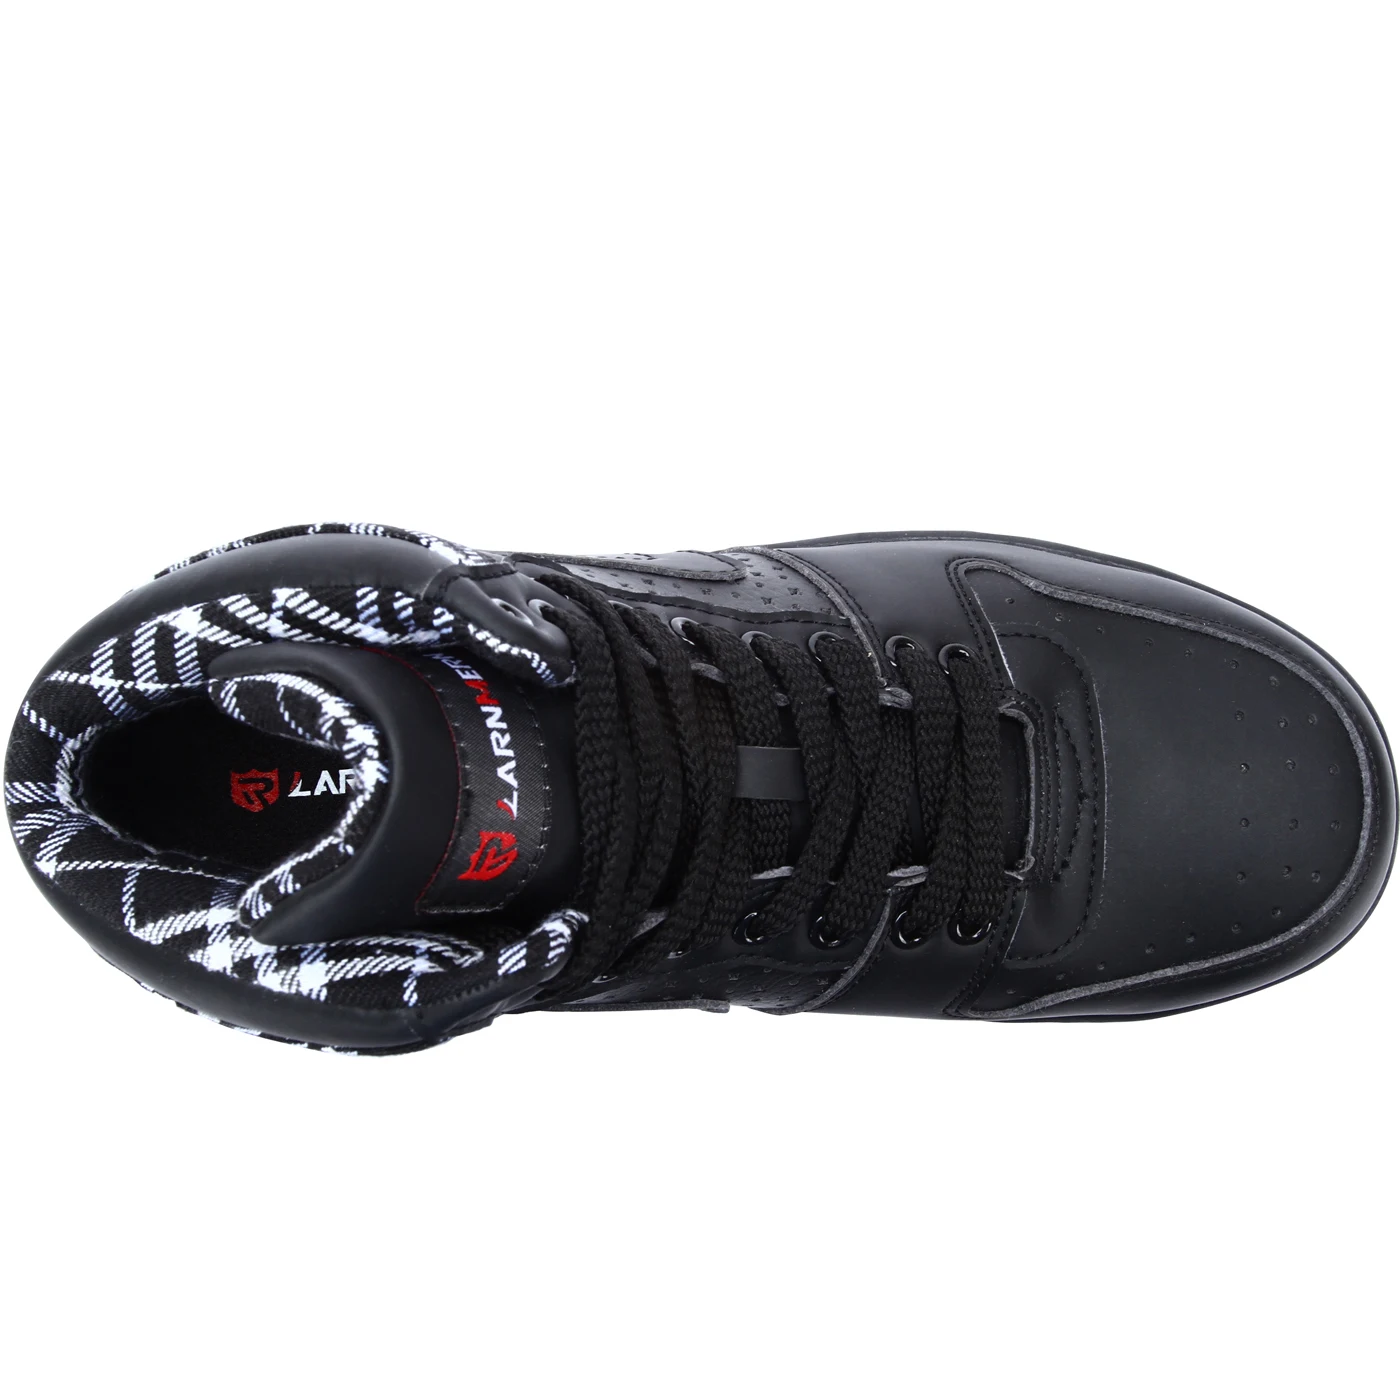 SSS-защитная обувь дышащая защитная обувь Для мужчин легкие ботинки со стальным носком пирсинг работы одинарный, сетчатый кроссовки